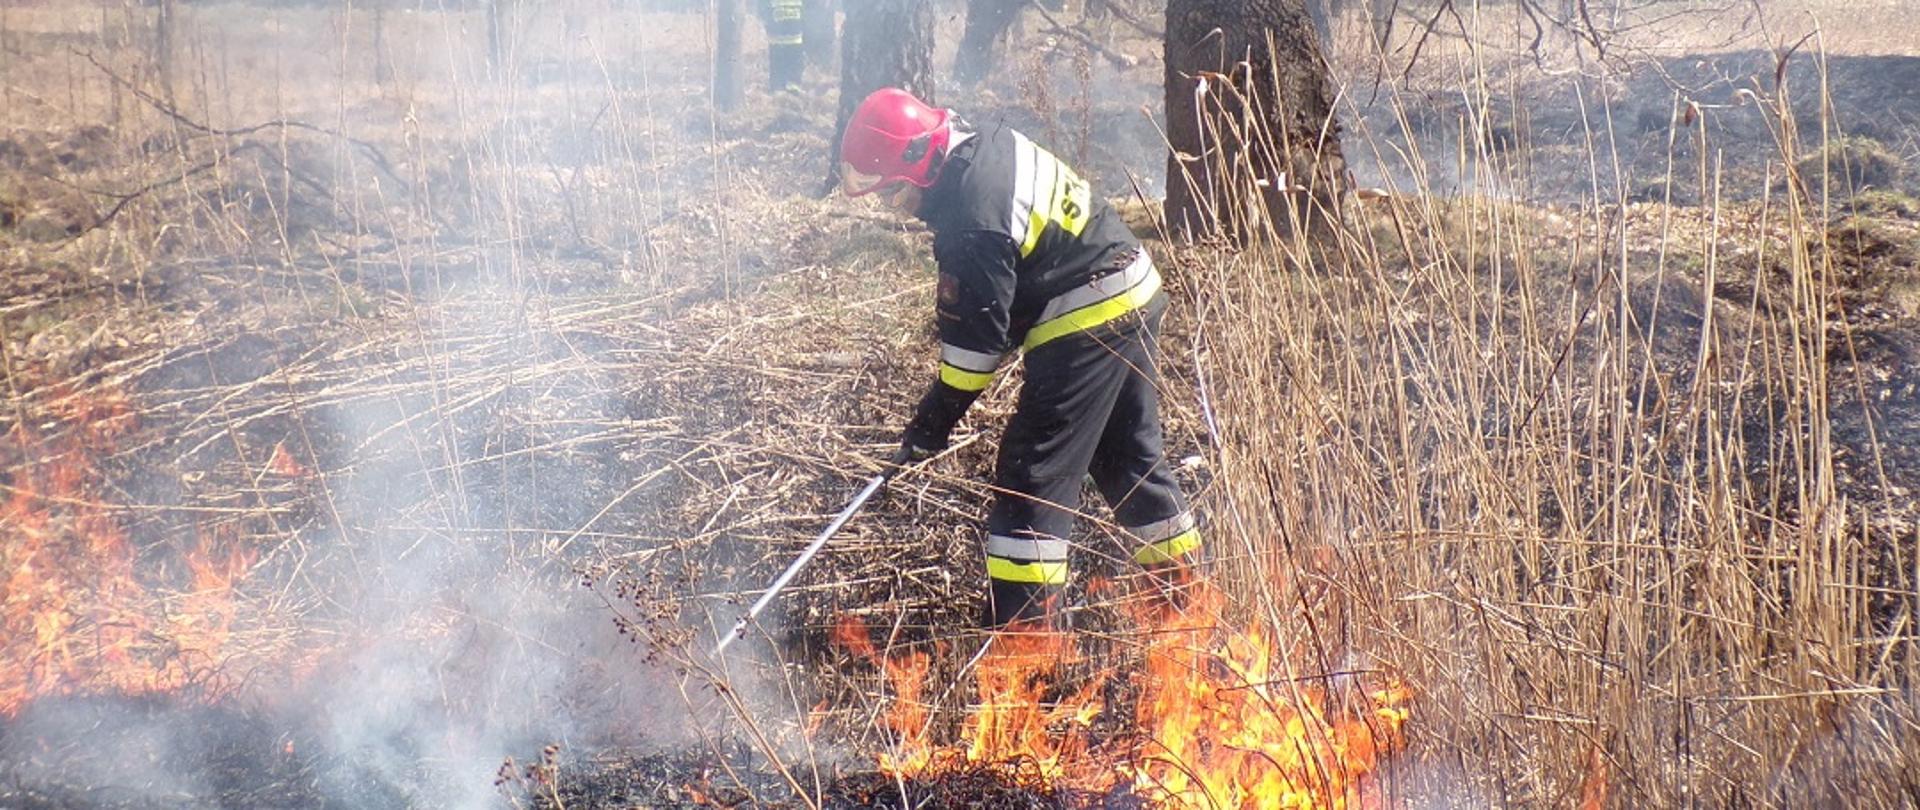 Na zdjęciu widzimy strażaka gaszącego pożar trawy na nieużytkach tłumicą. Na dalszym planie widzimy strażaka gaszącego pożar trawy za pomocą wody.